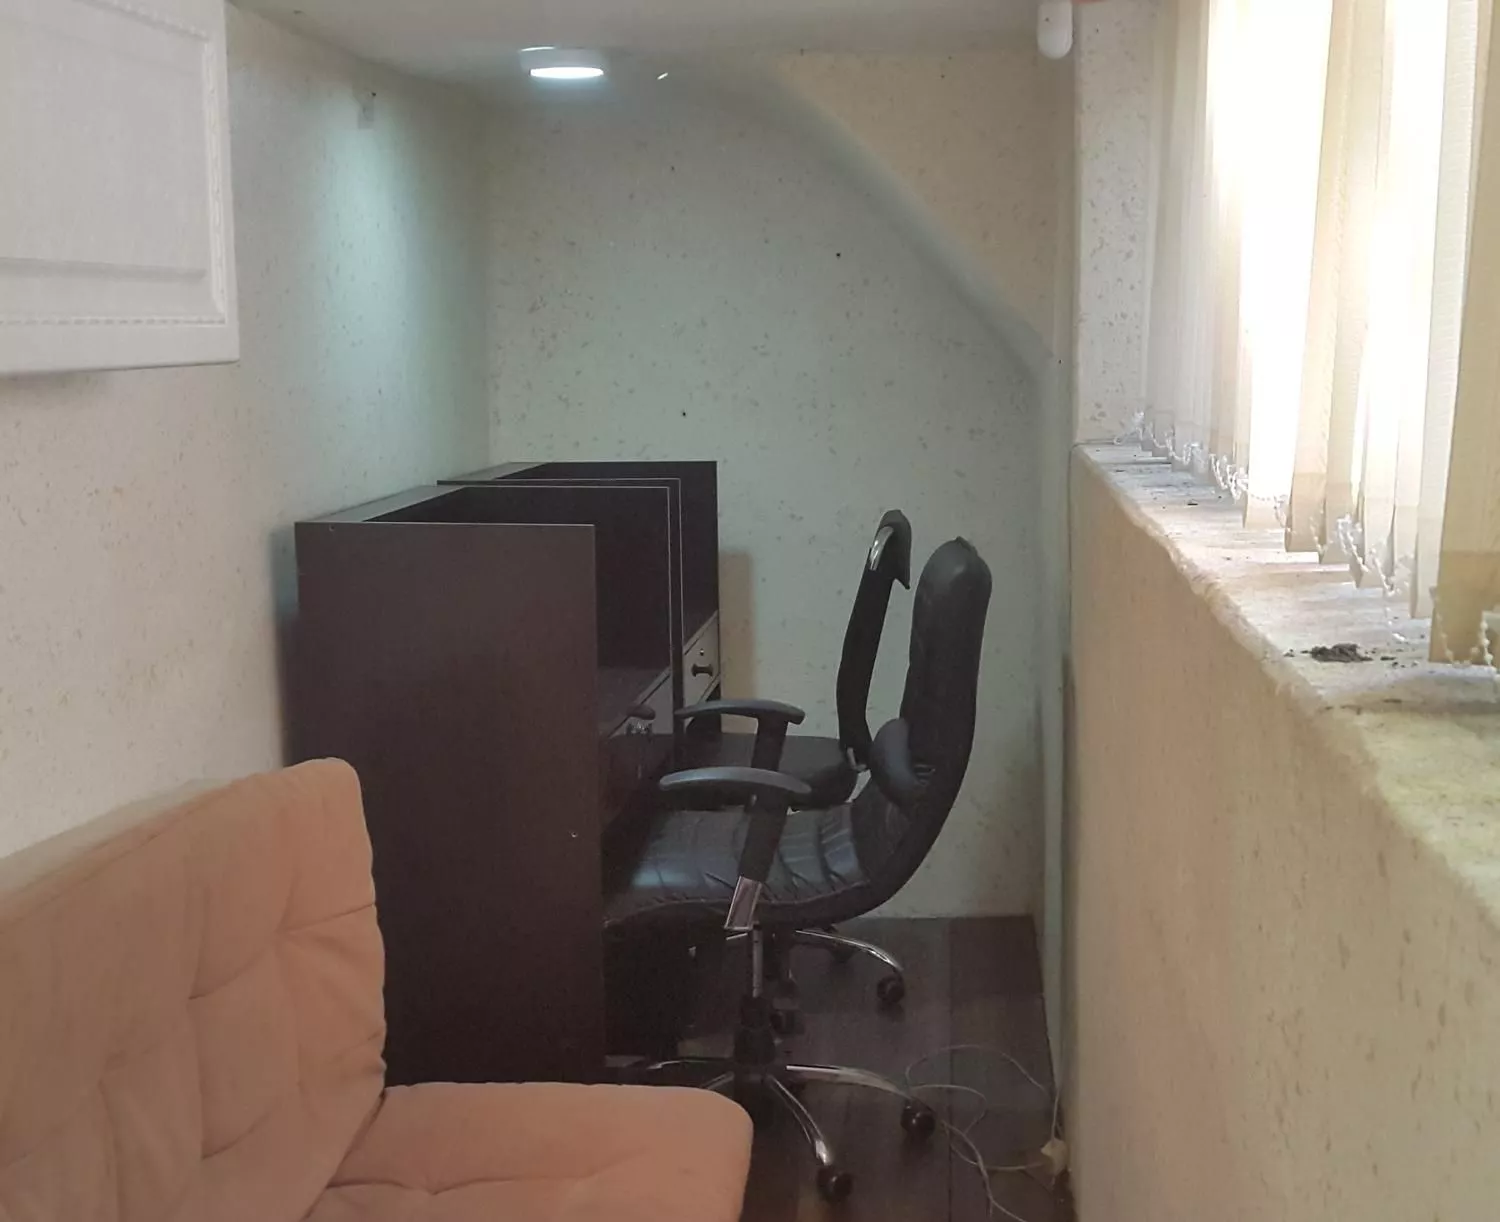 دفتر کار در ستارخان تهران ویلا در محیطی آرام